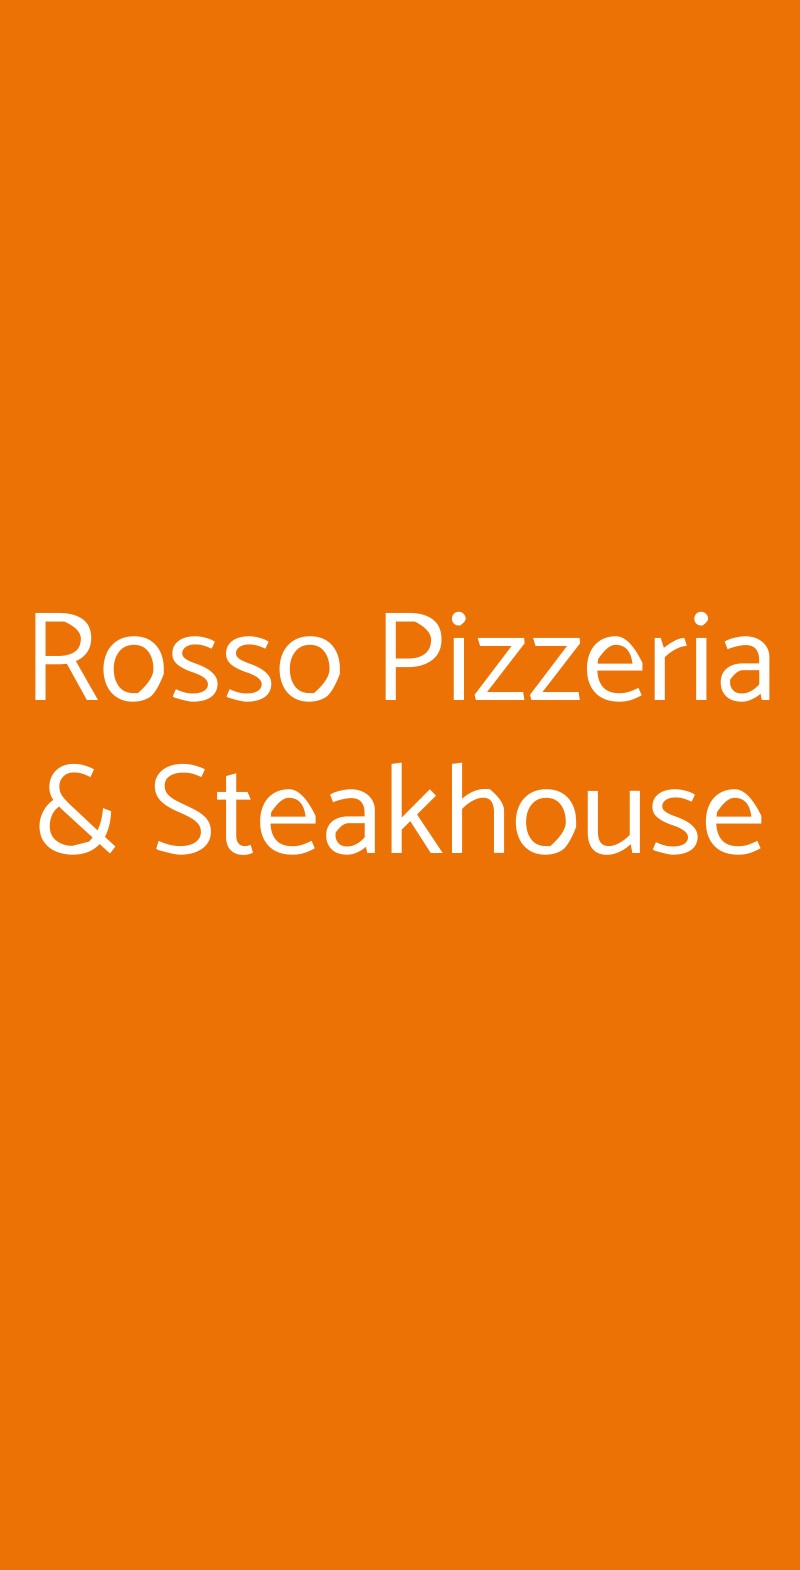 Rosso Pizzeria & Steakhouse Pontedera menù 1 pagina